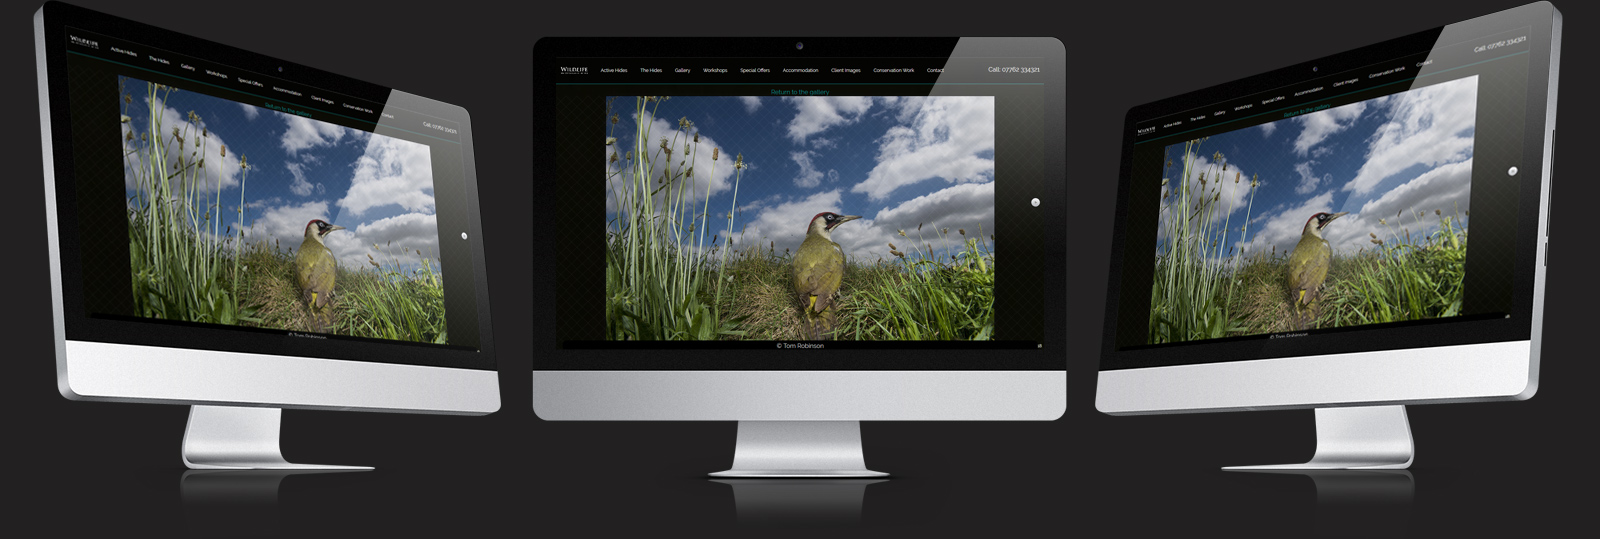 Stamford Web Design - Wildlife Photo Hides